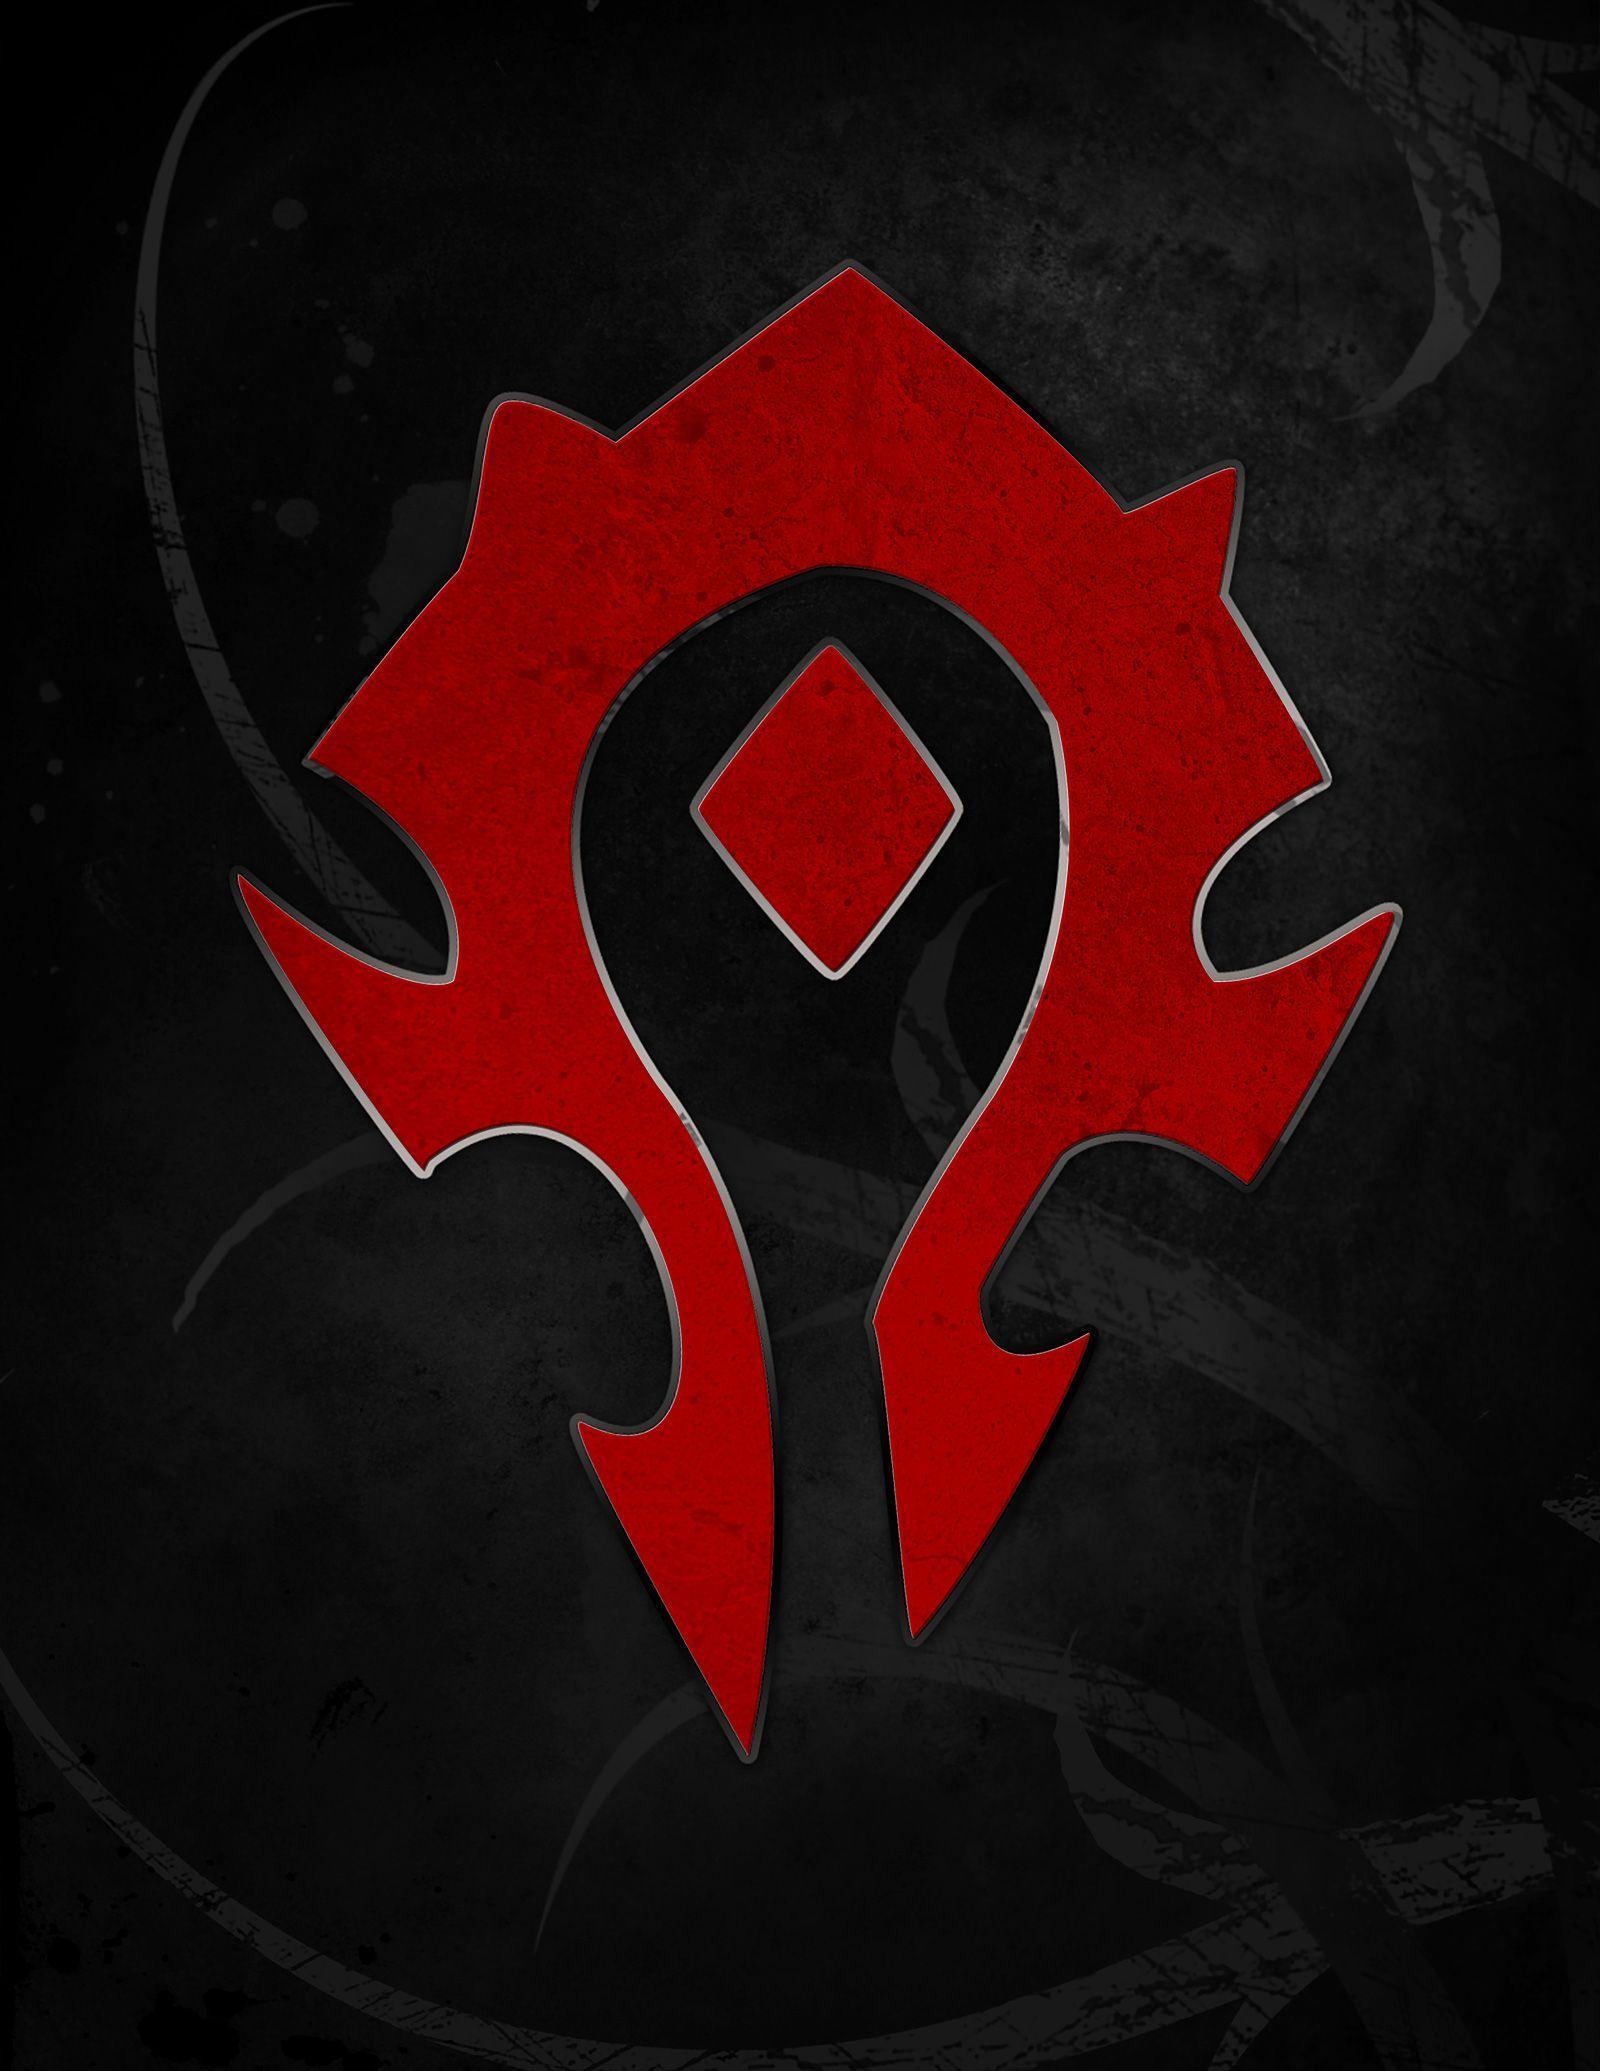 World of Warcraft Horde Logo - World of Warcraft. FOR THE HORDE!!! | random stuff that I like ...